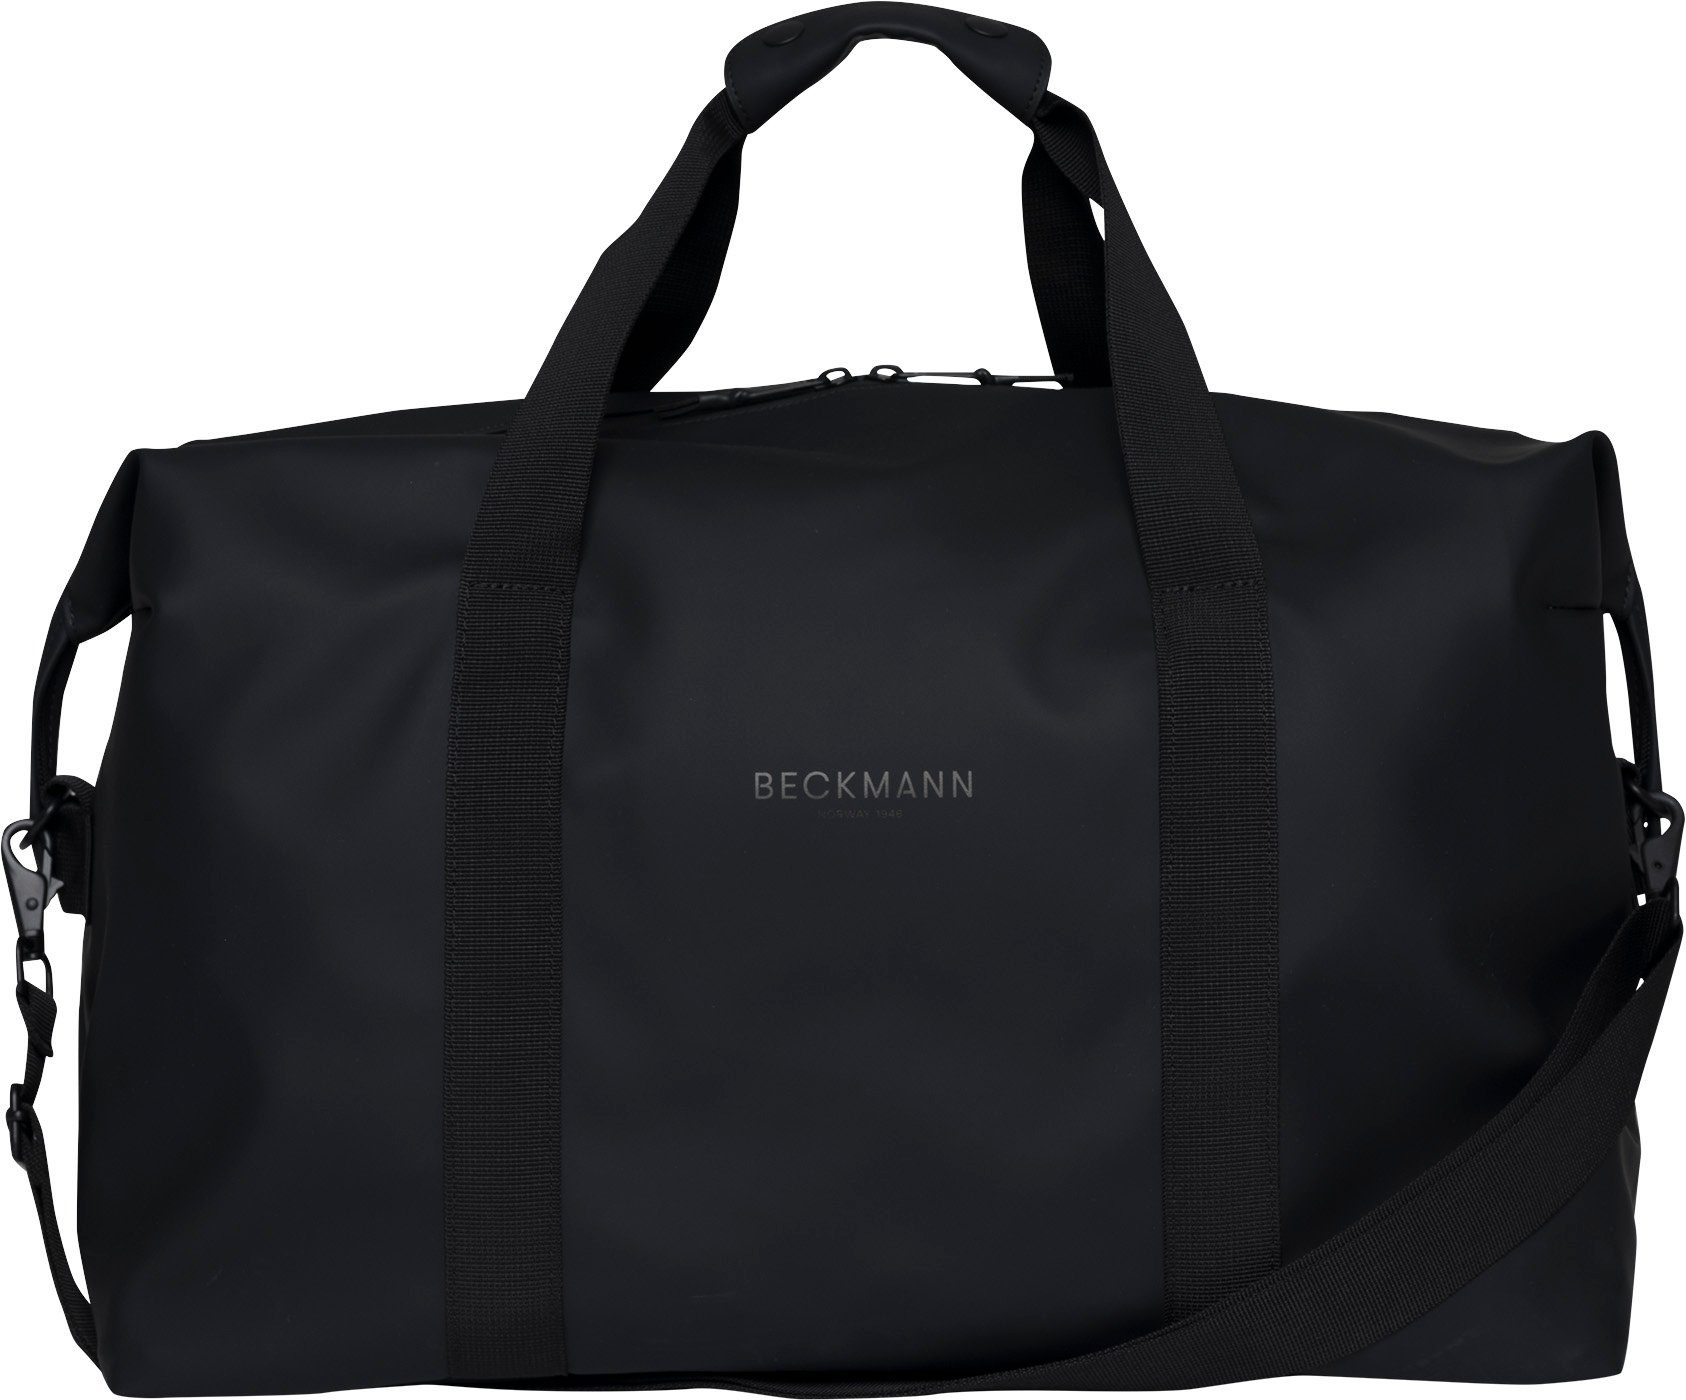 Beckmann Reisetasche Sporttasche Street Weekend Bag 48H Black (1 Stück), Reisetasche, Reisegepäck